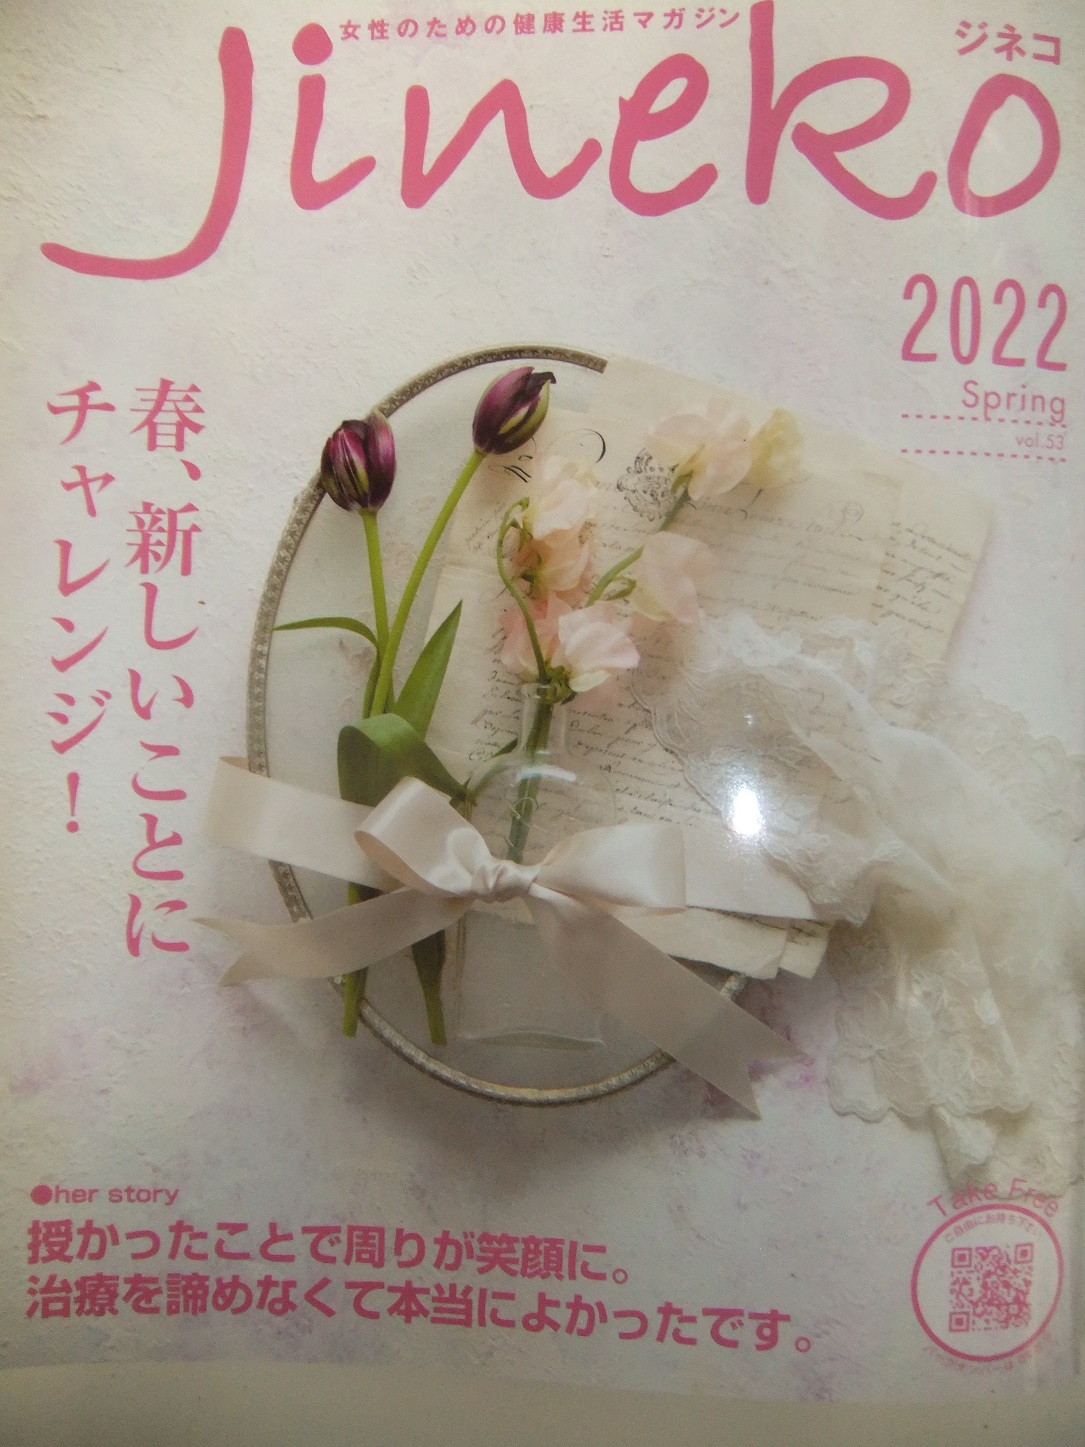 JINEKO2022春号